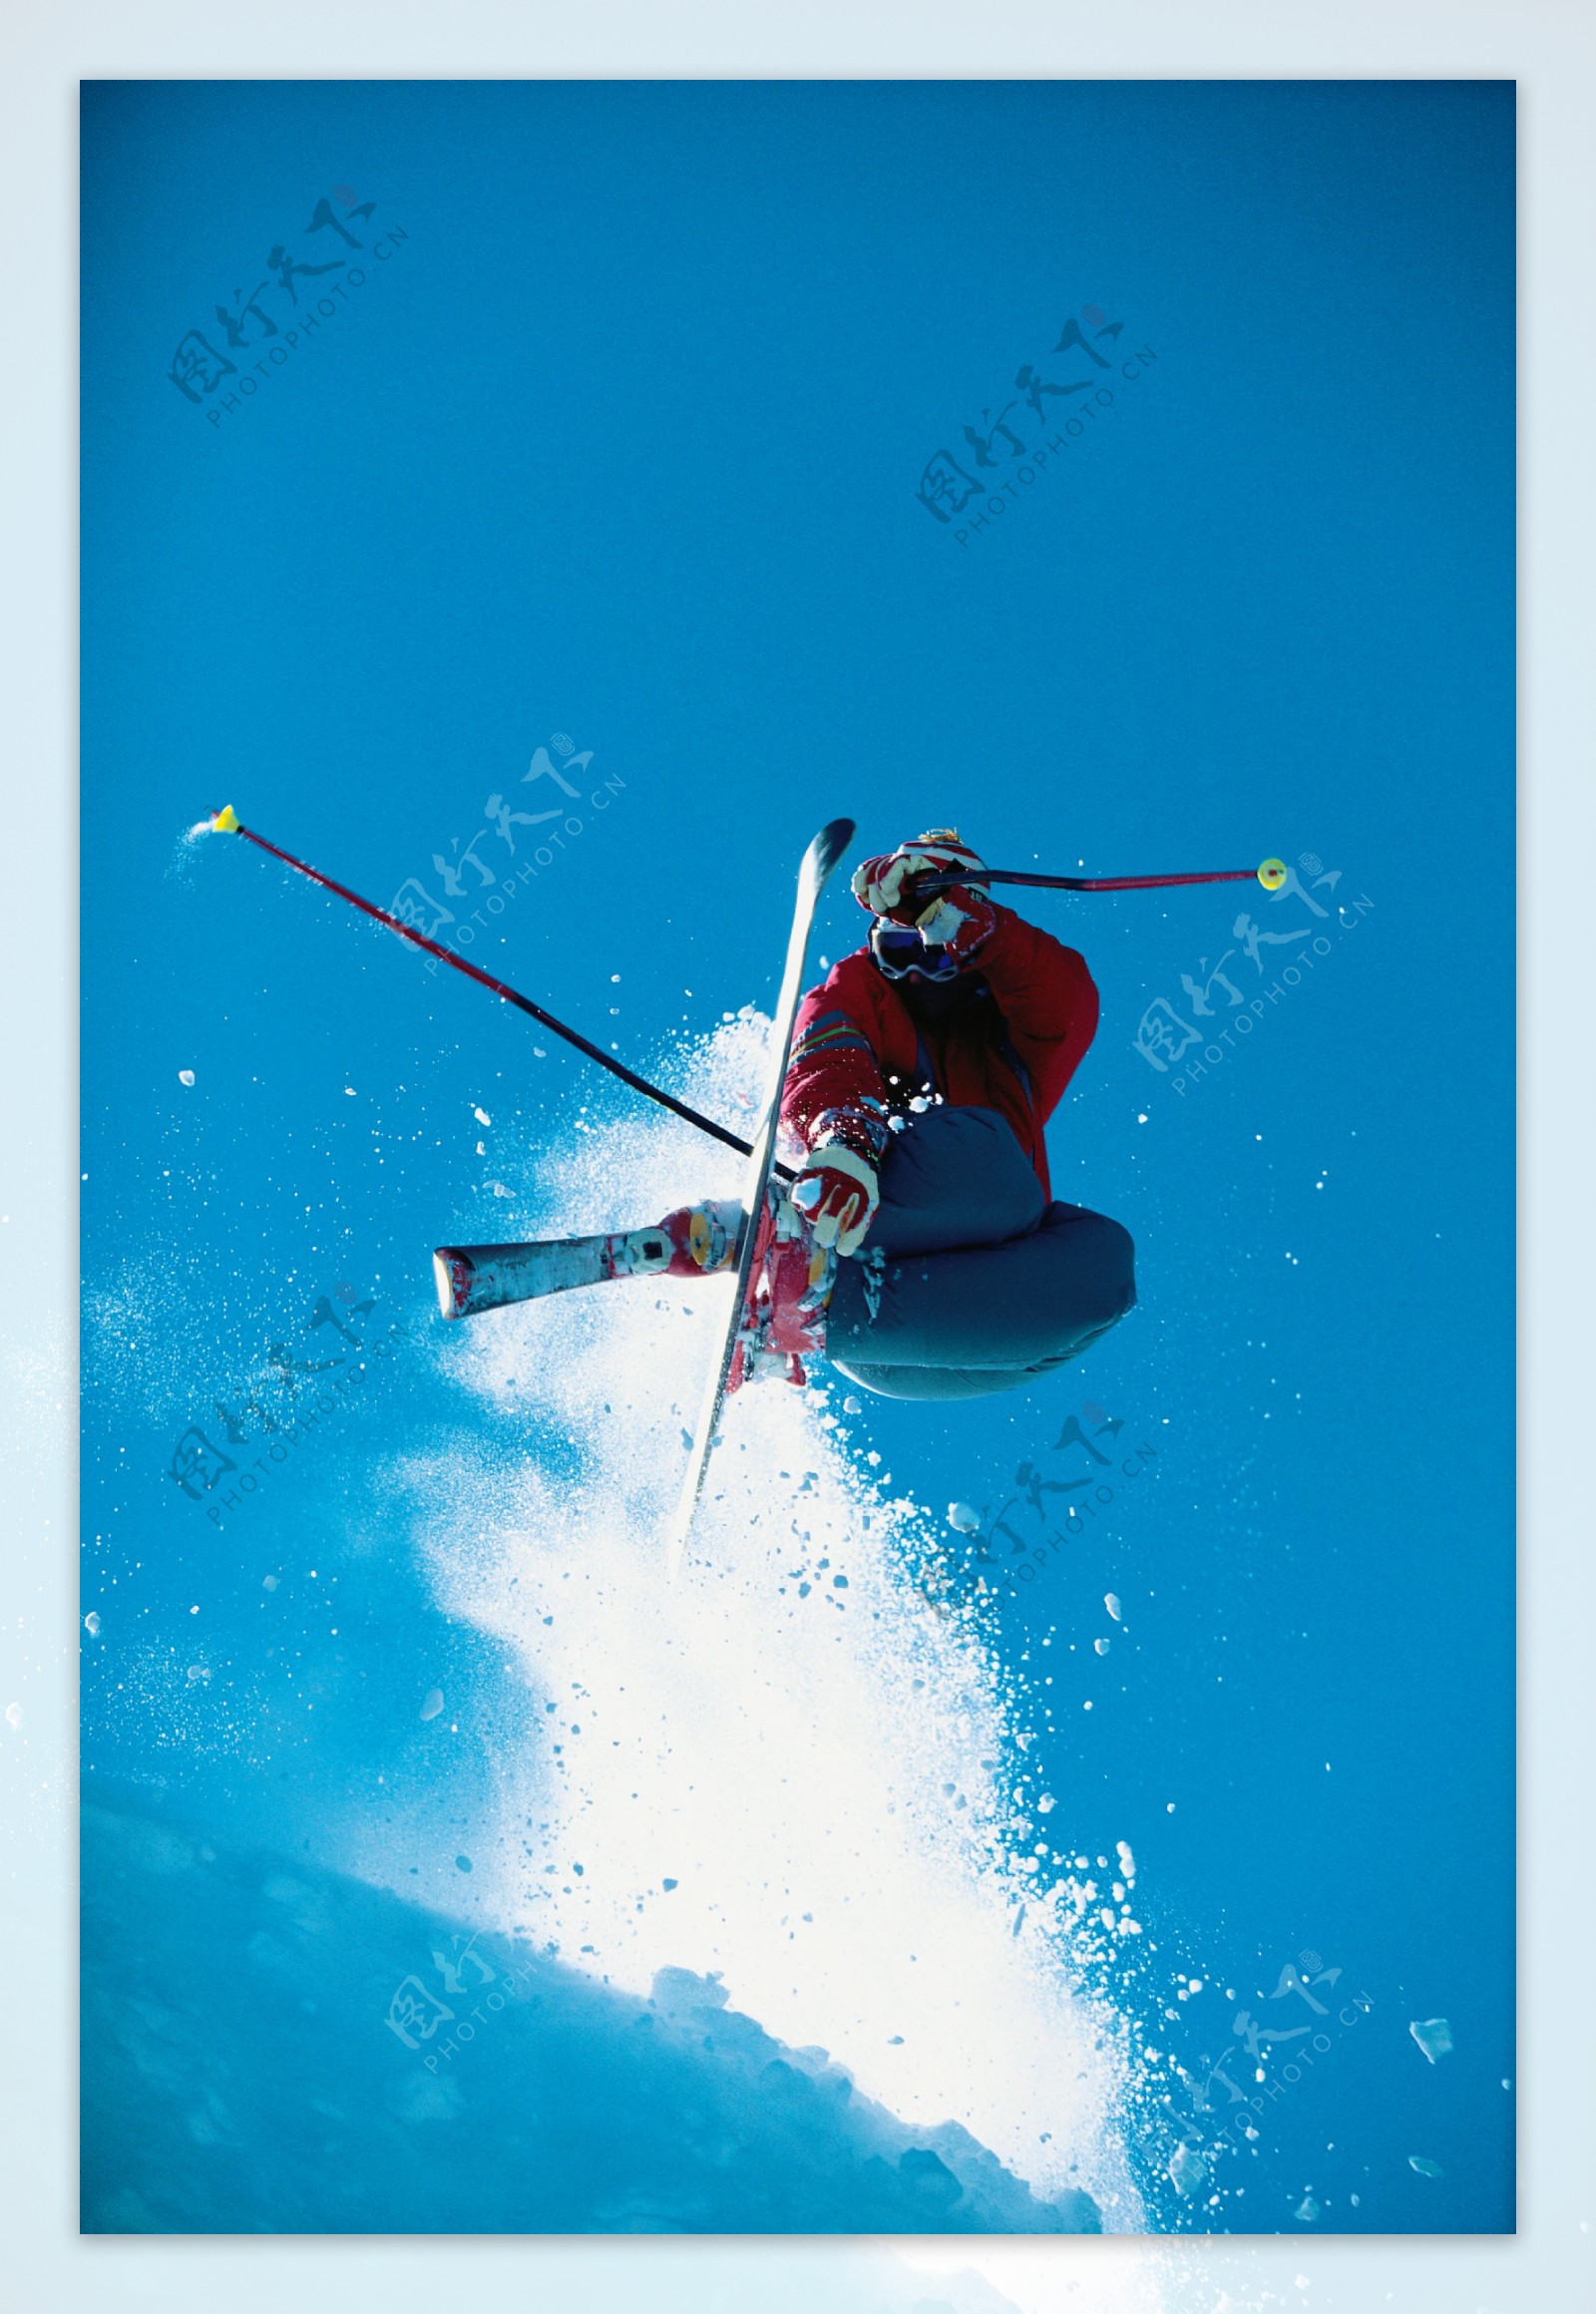 双板滑雪飞起瞬间图片